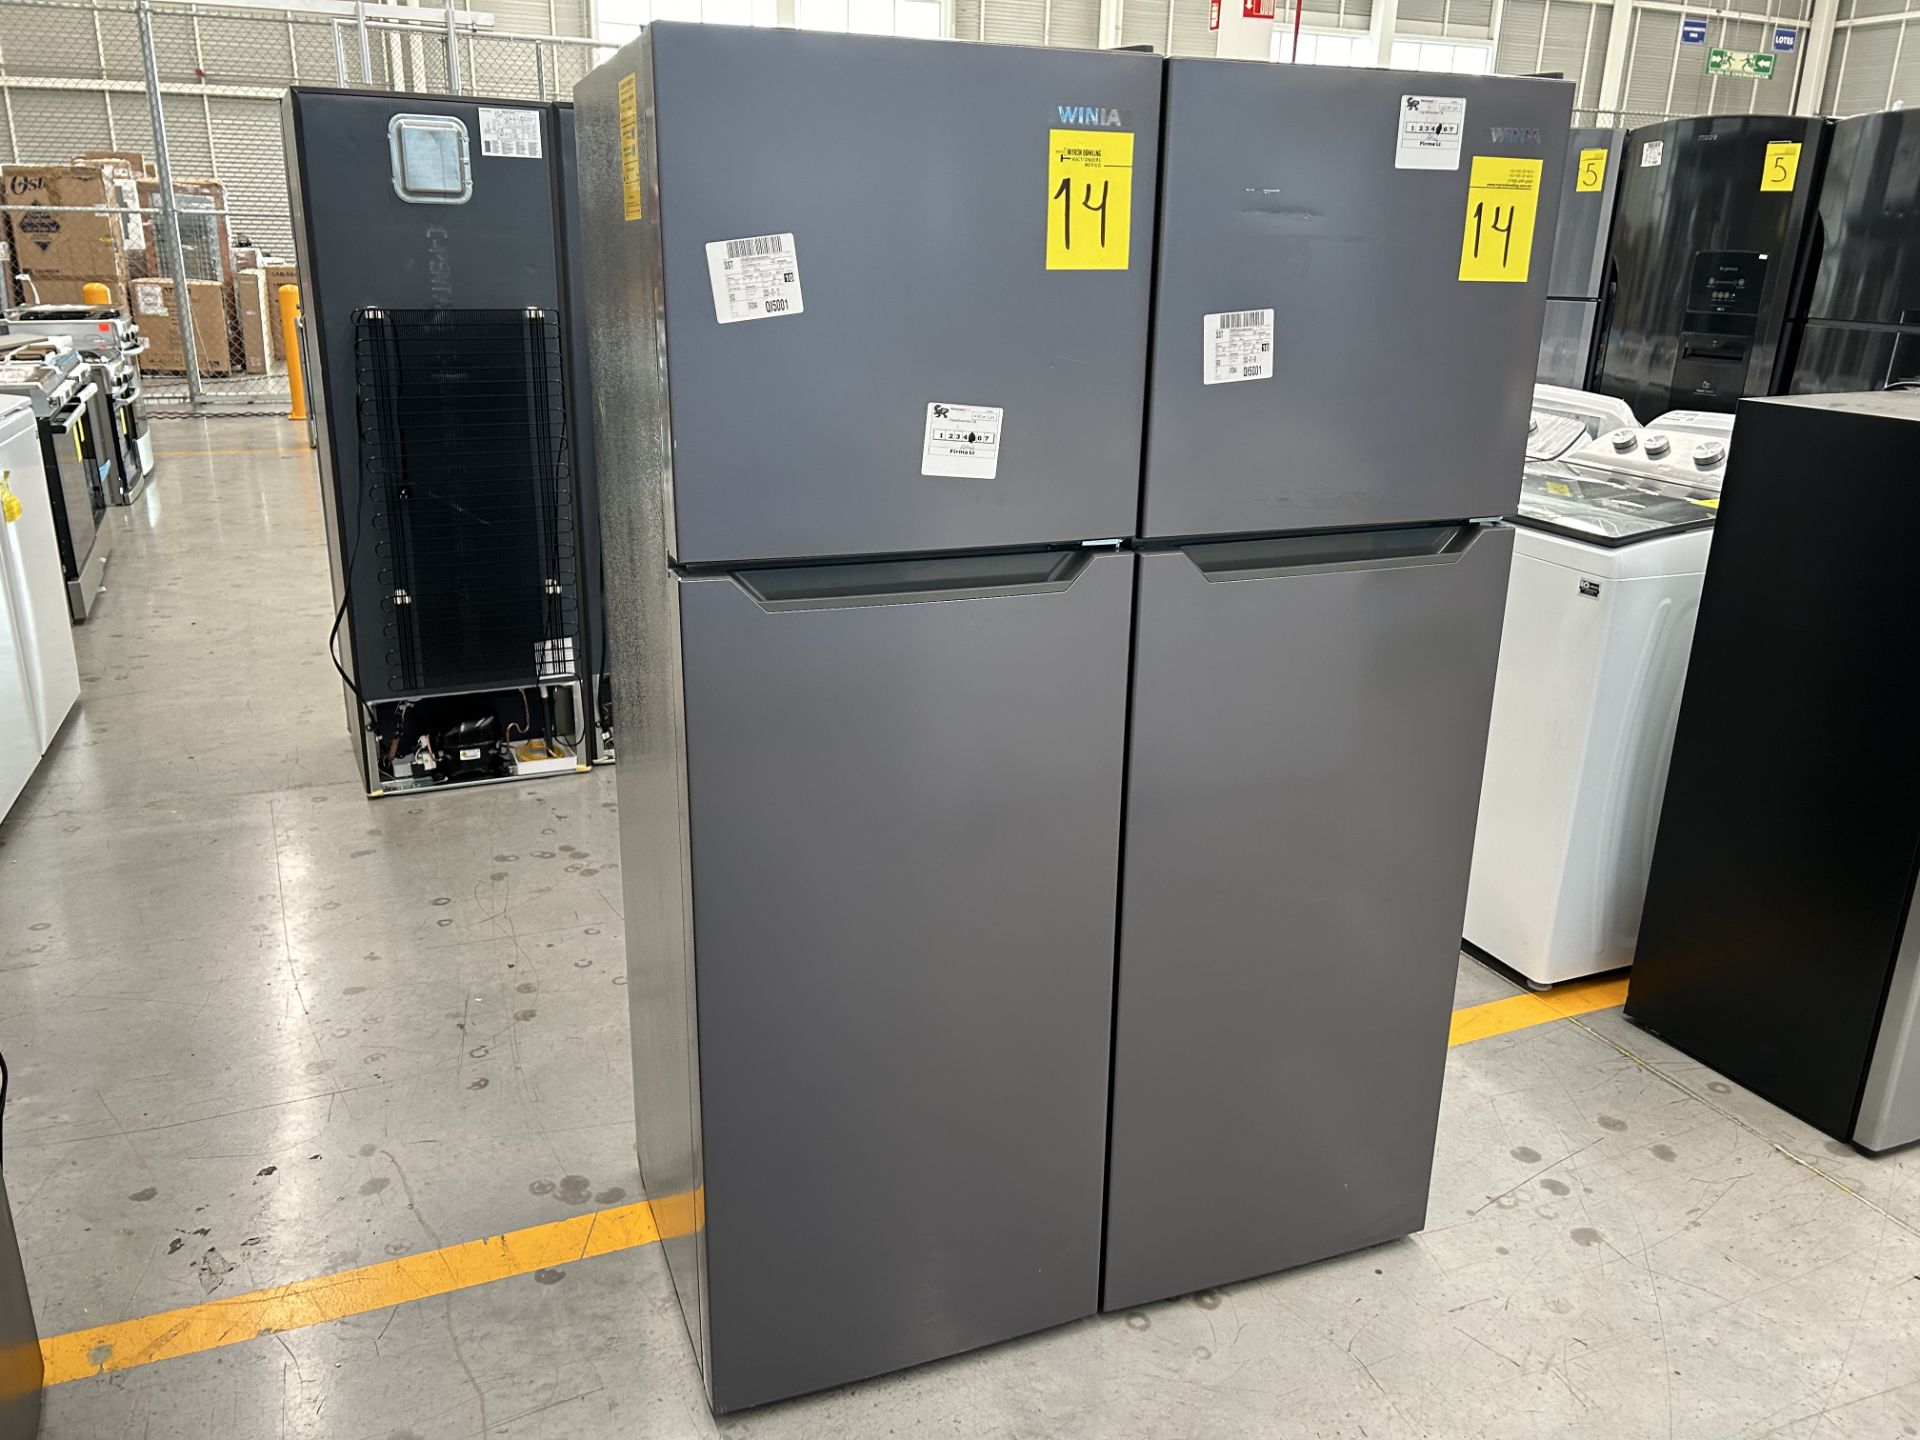 Lote de 2 Refrigeradores contiene: 1 Refrigerador Marca WINIA, Modelo WRT9000AMMX, Serie 012580, Co - Image 2 of 6